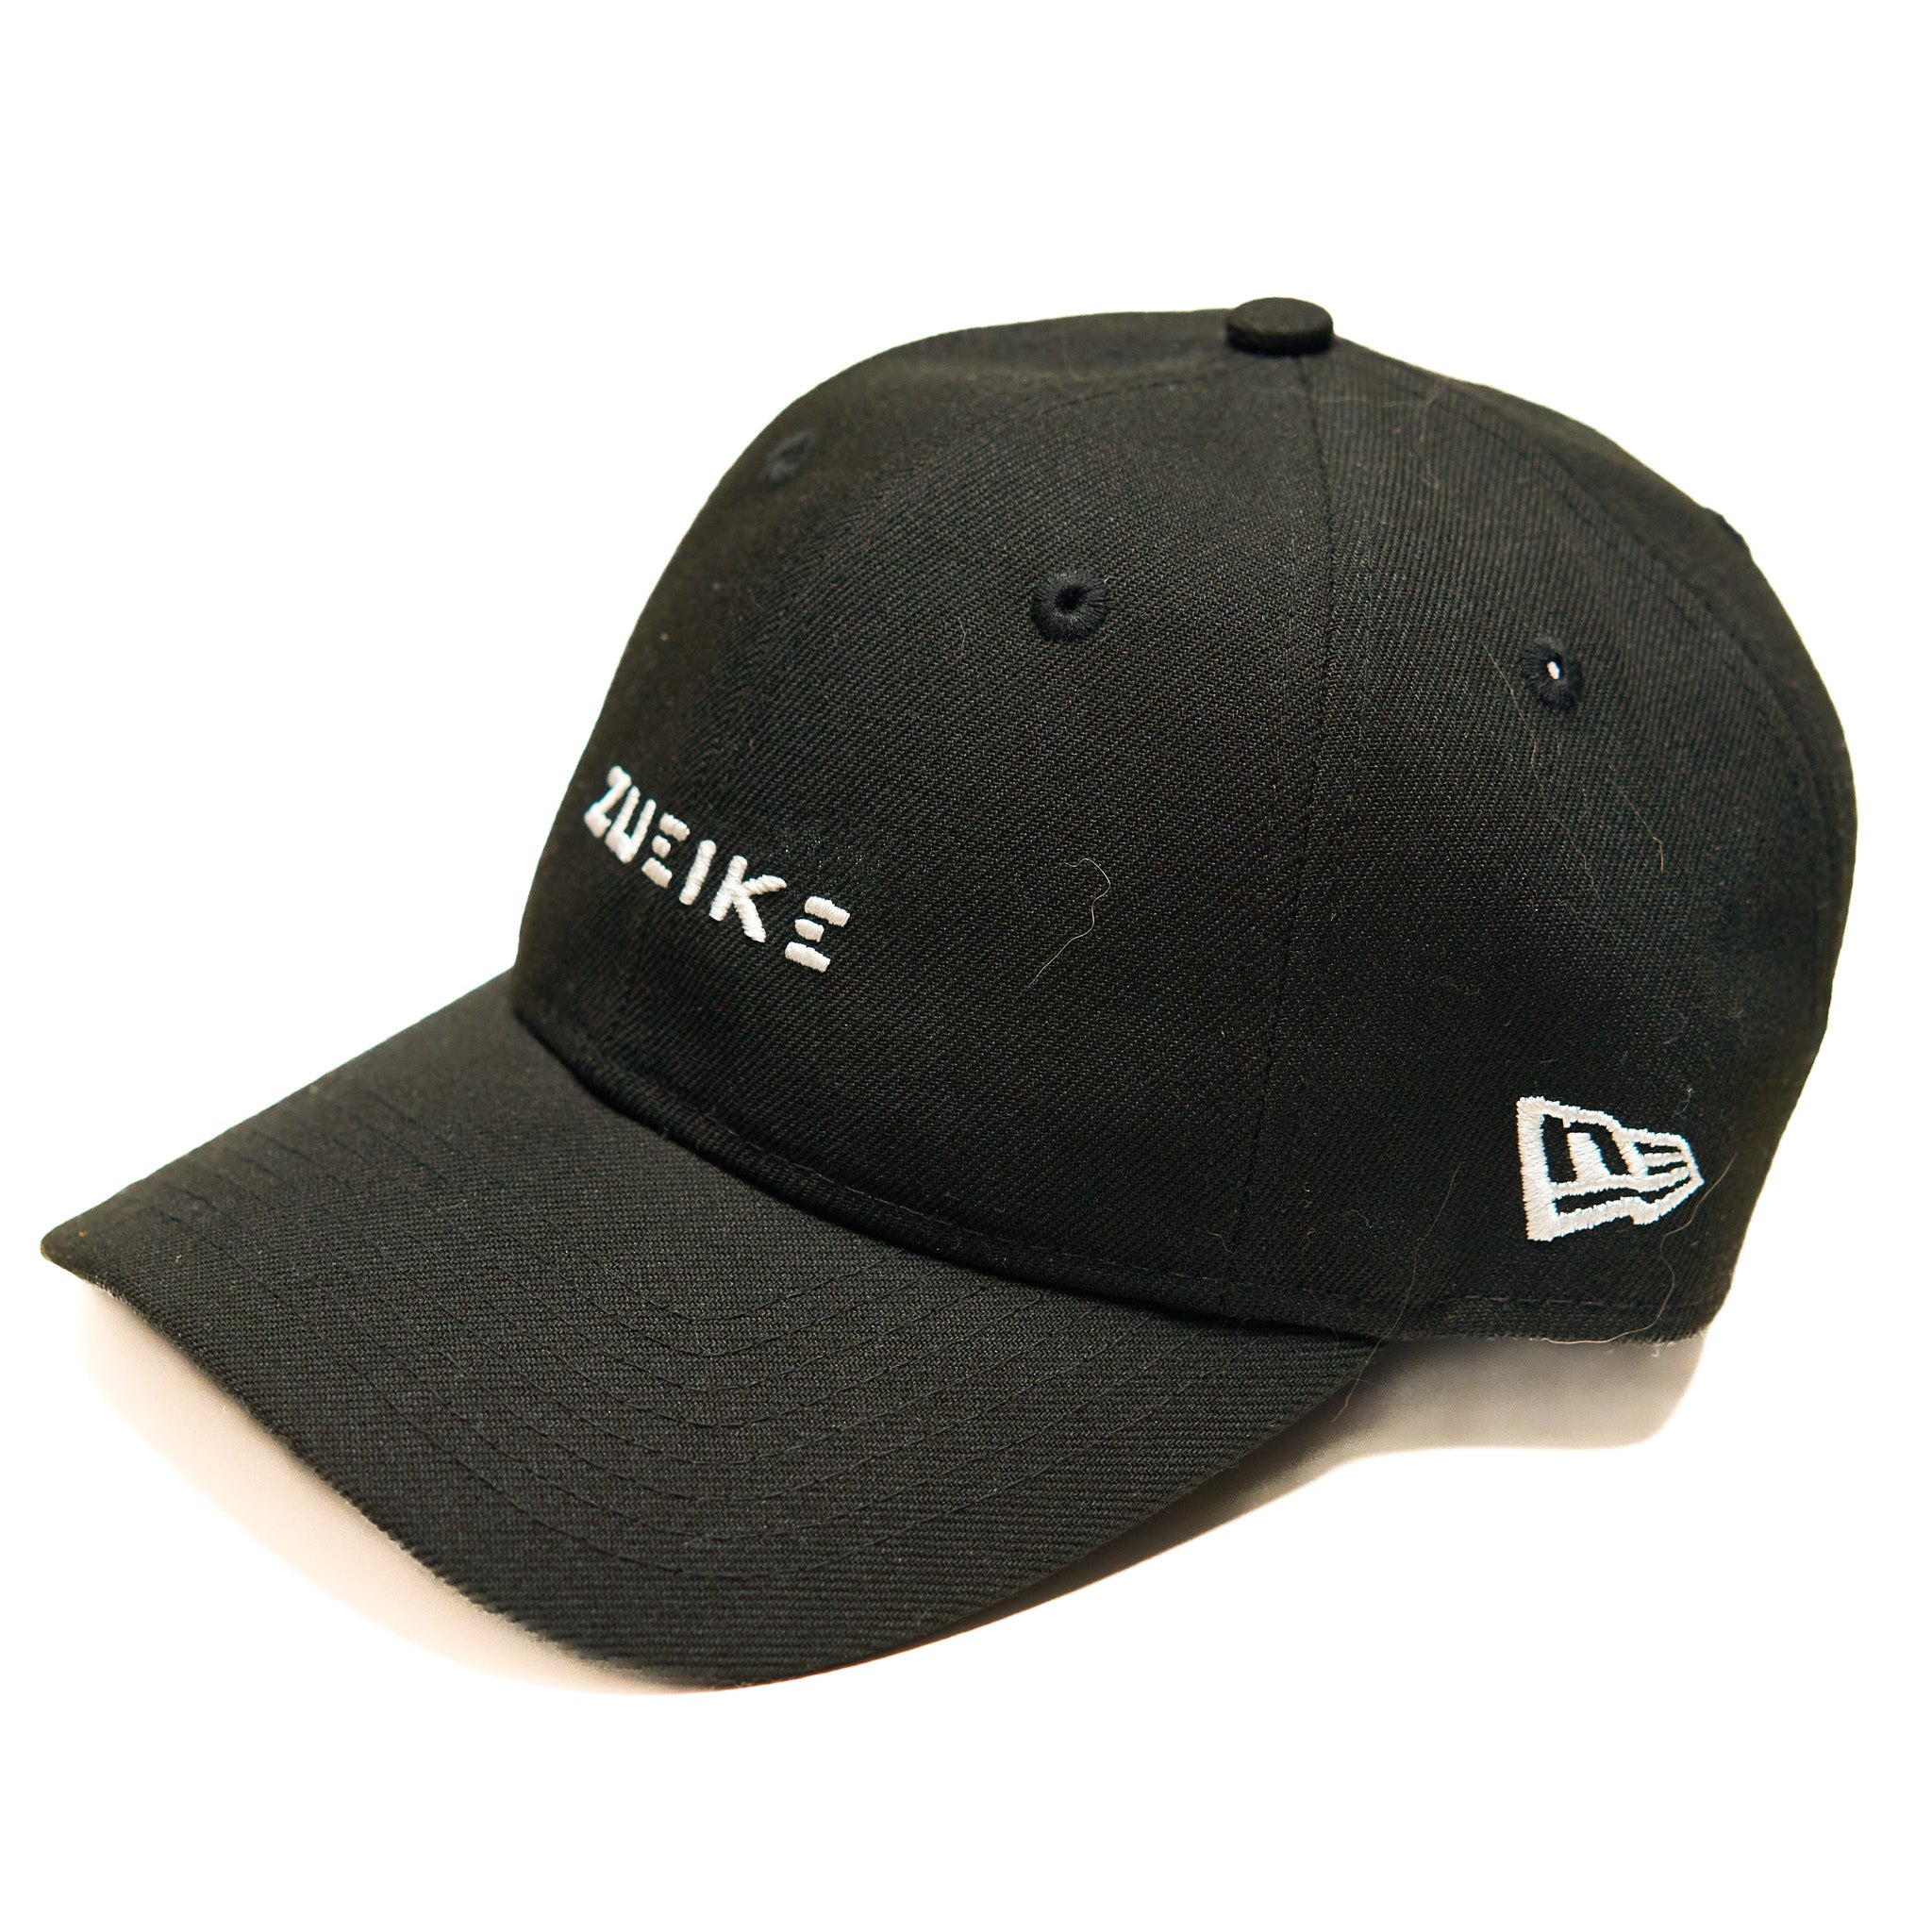 Zueike NE structured dad cap - Black/White